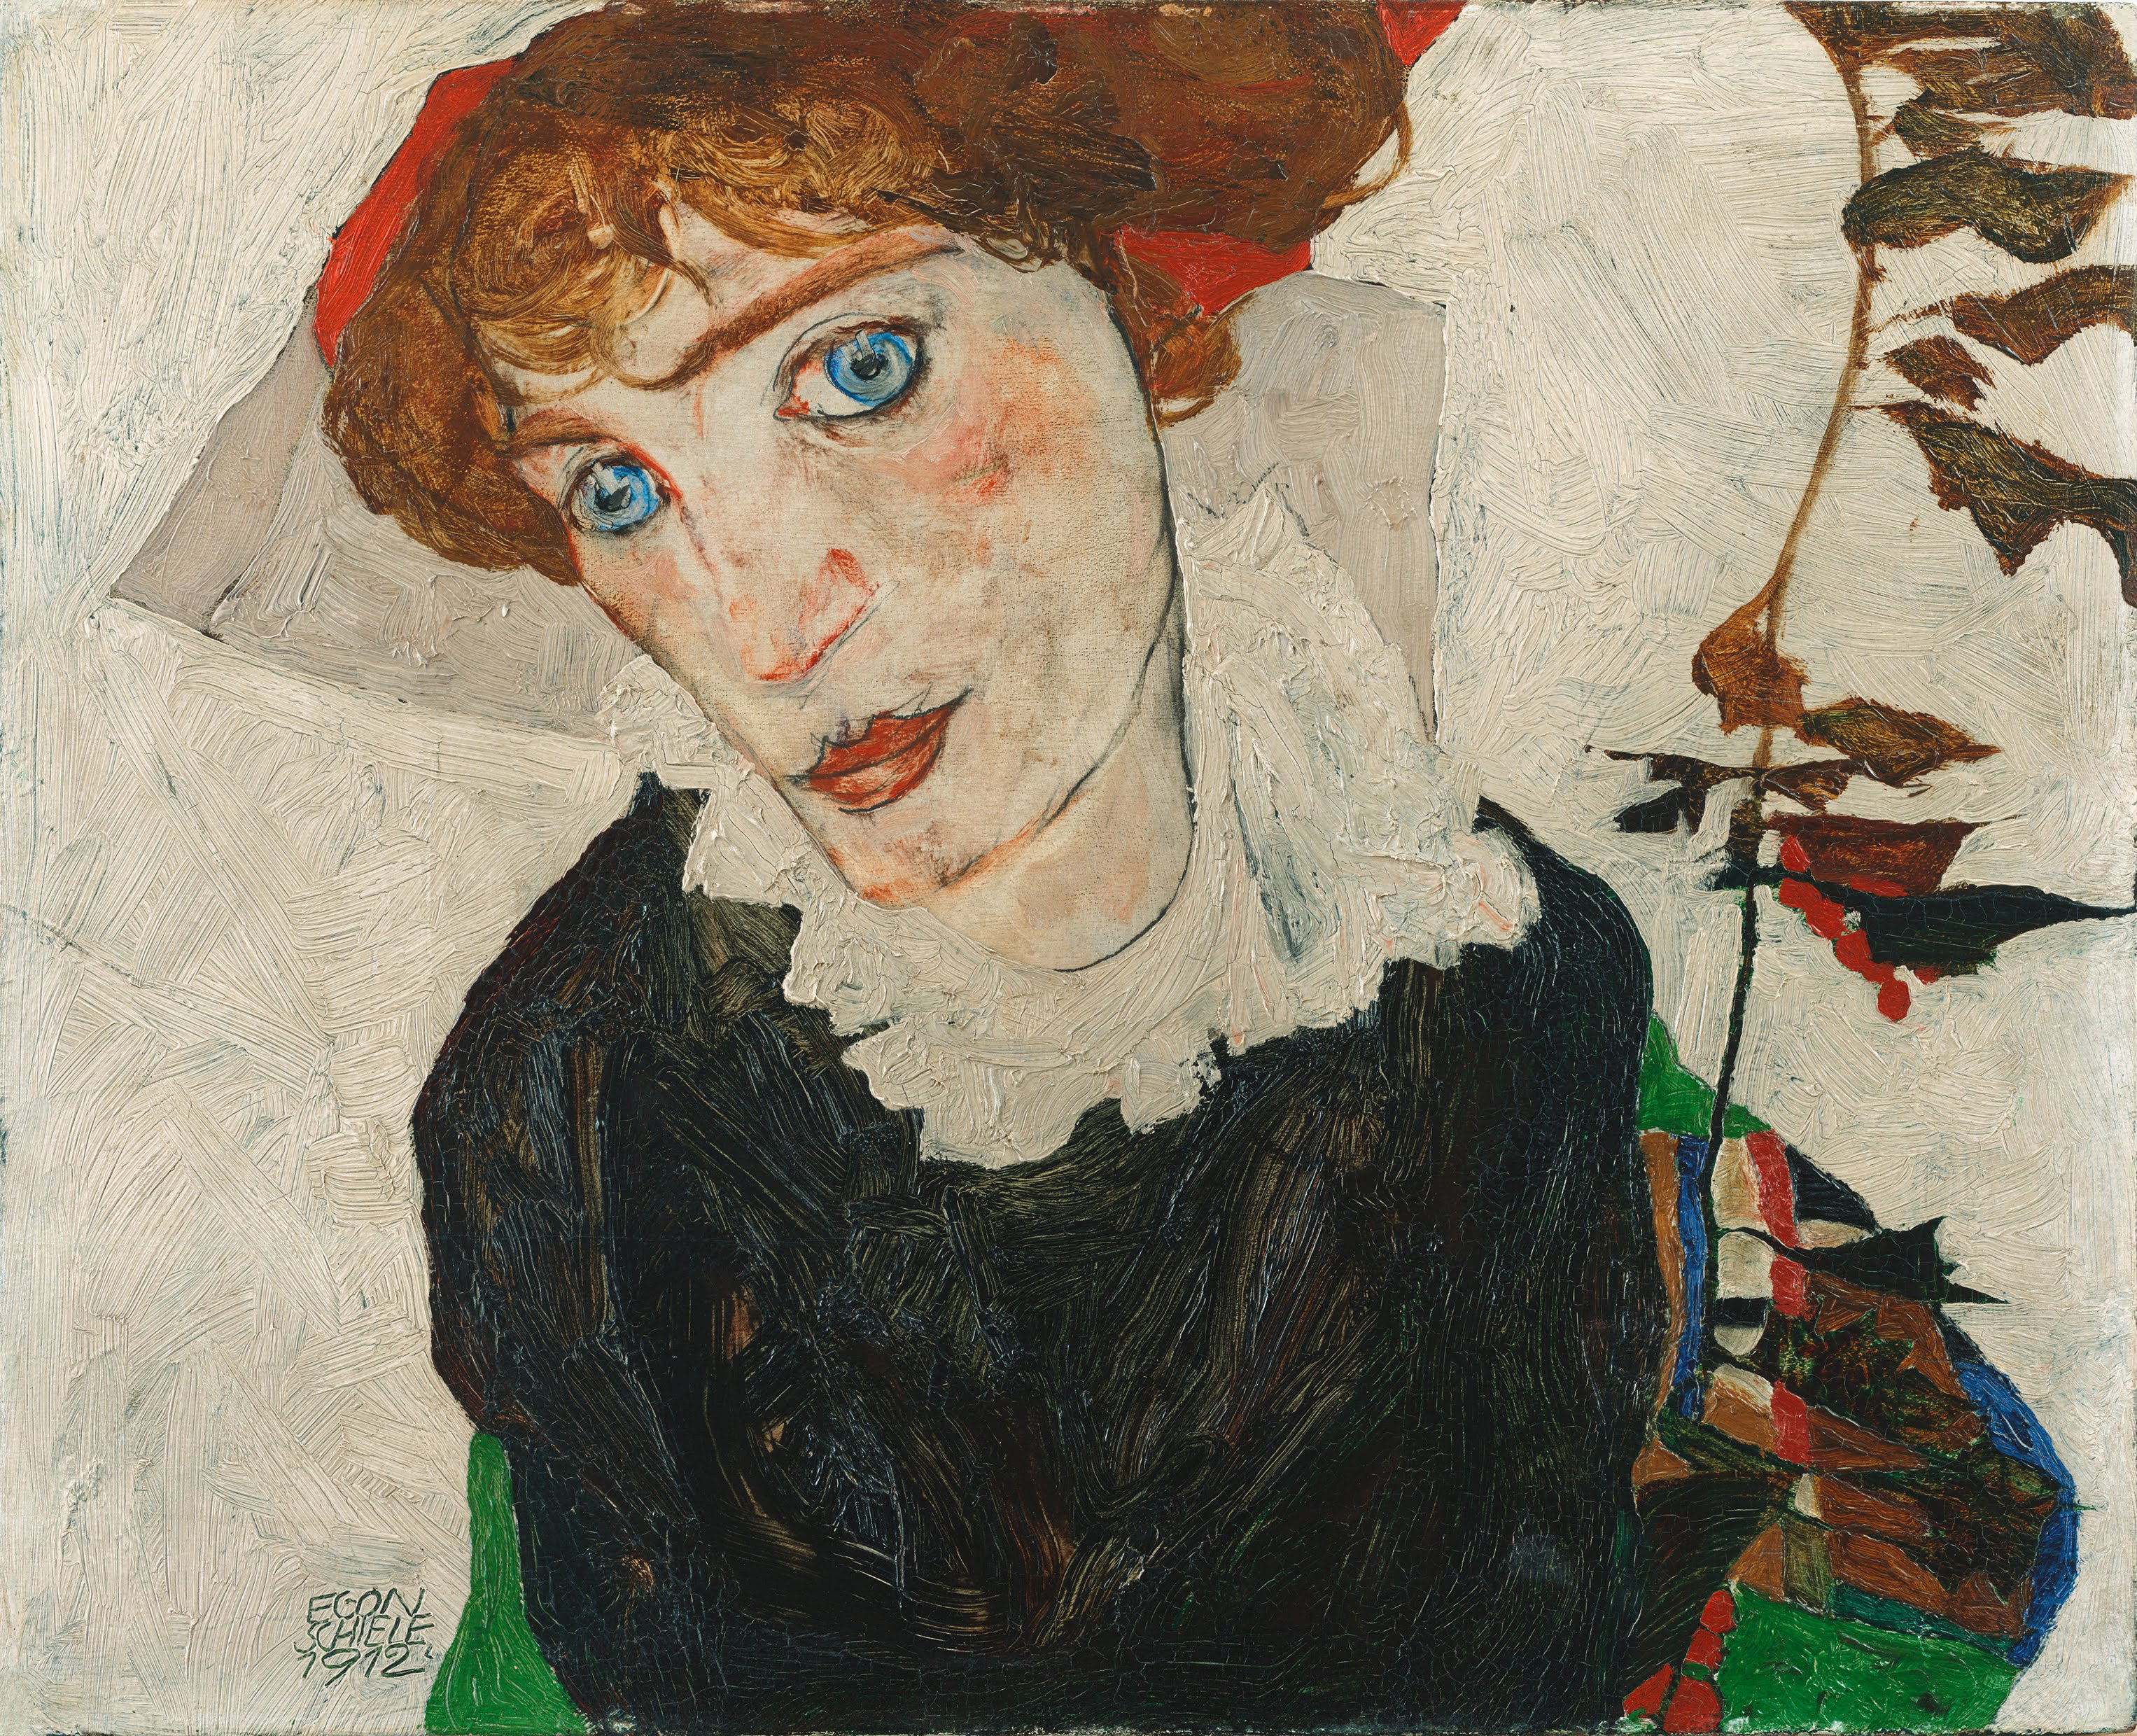 沃利·纽齐尔 by 埃贡 席勒 - 1912 - 32 x 39.8 cm 利奥波德博物馆